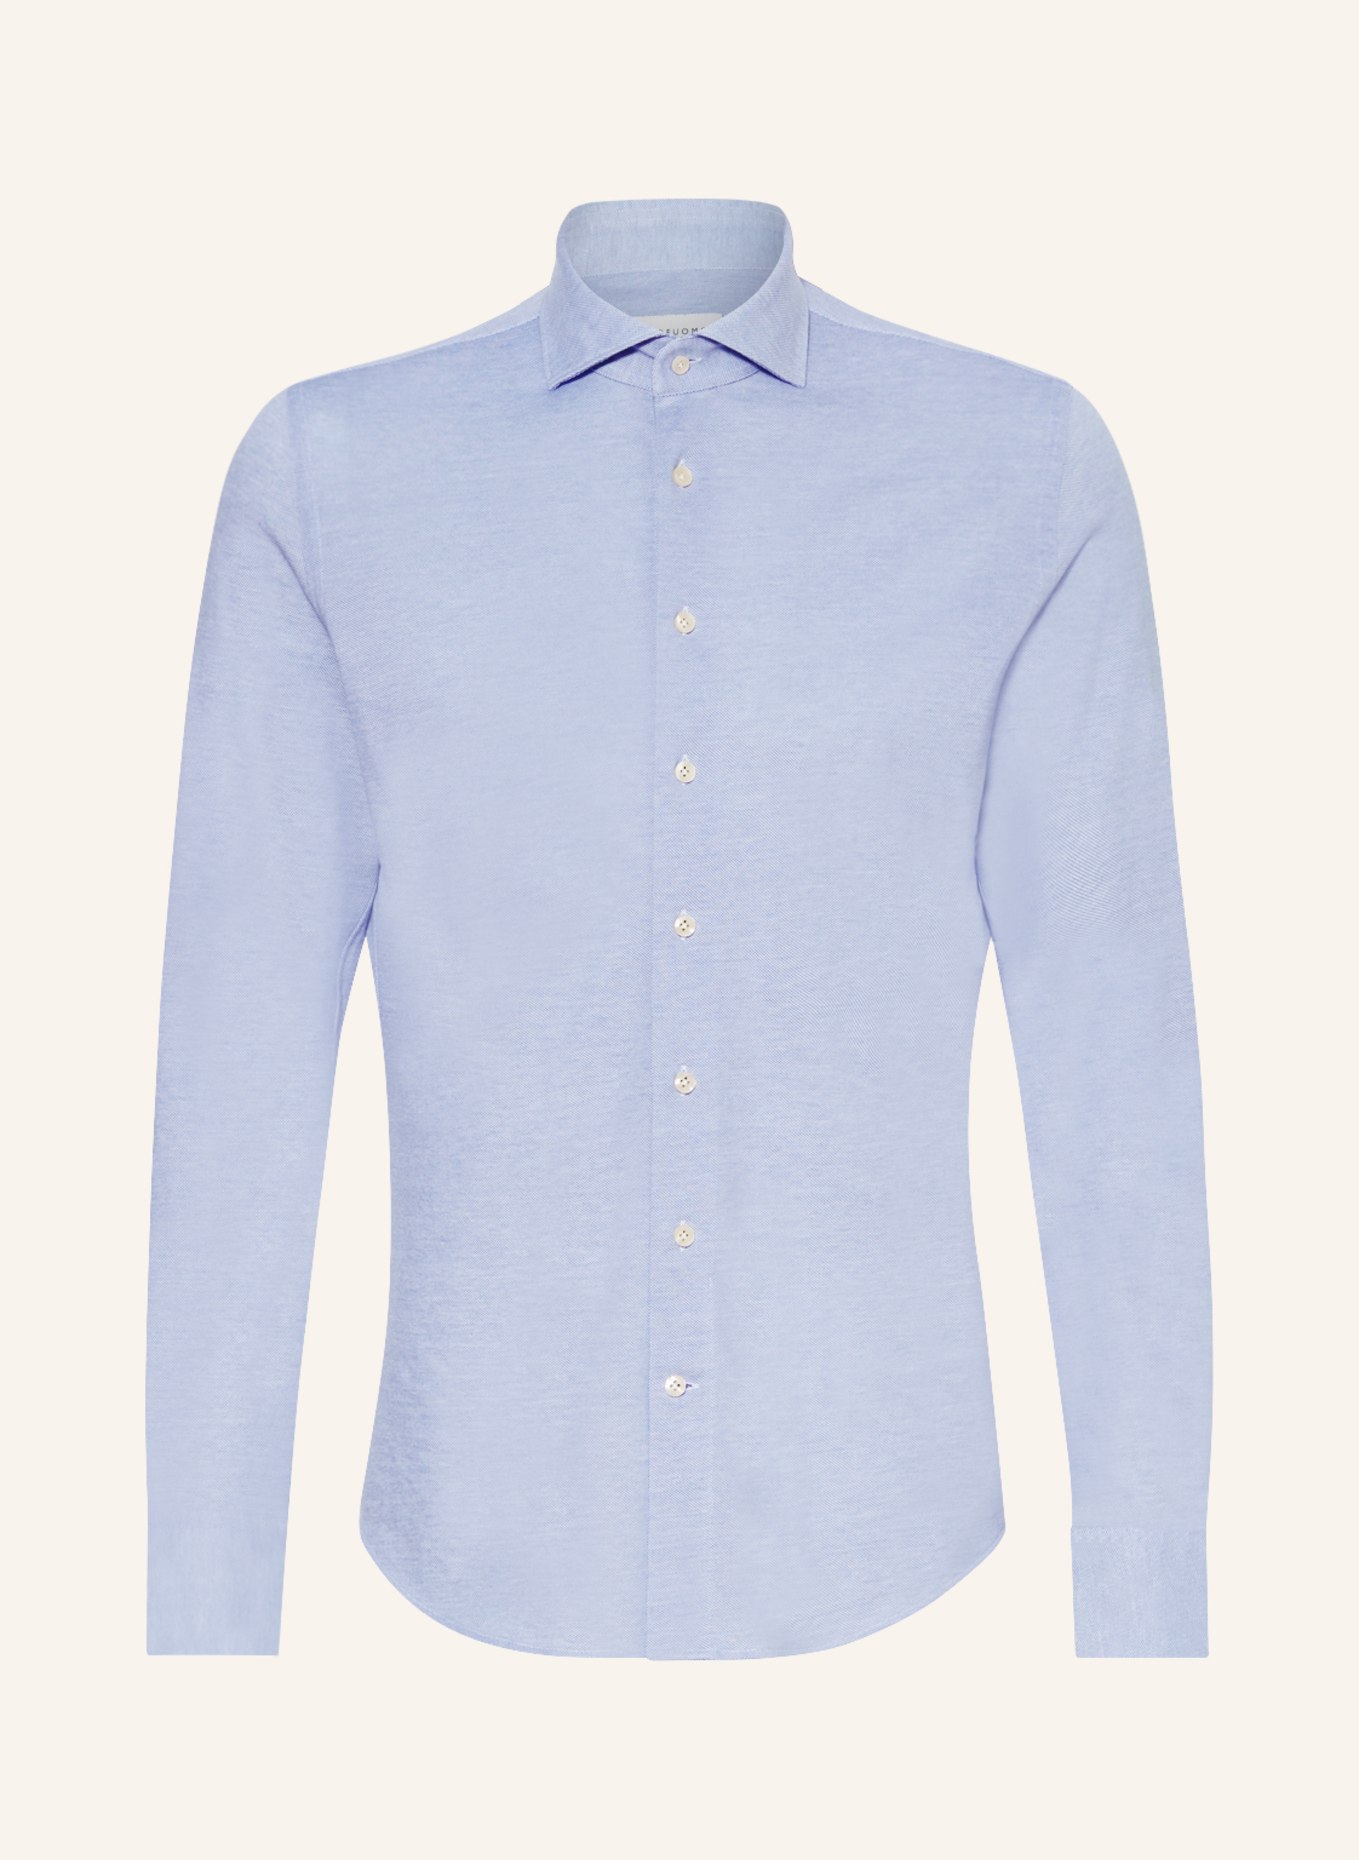 PROFUOMO Piqué shirt slim fit, Color: LIGHT BLUE (Image 1)